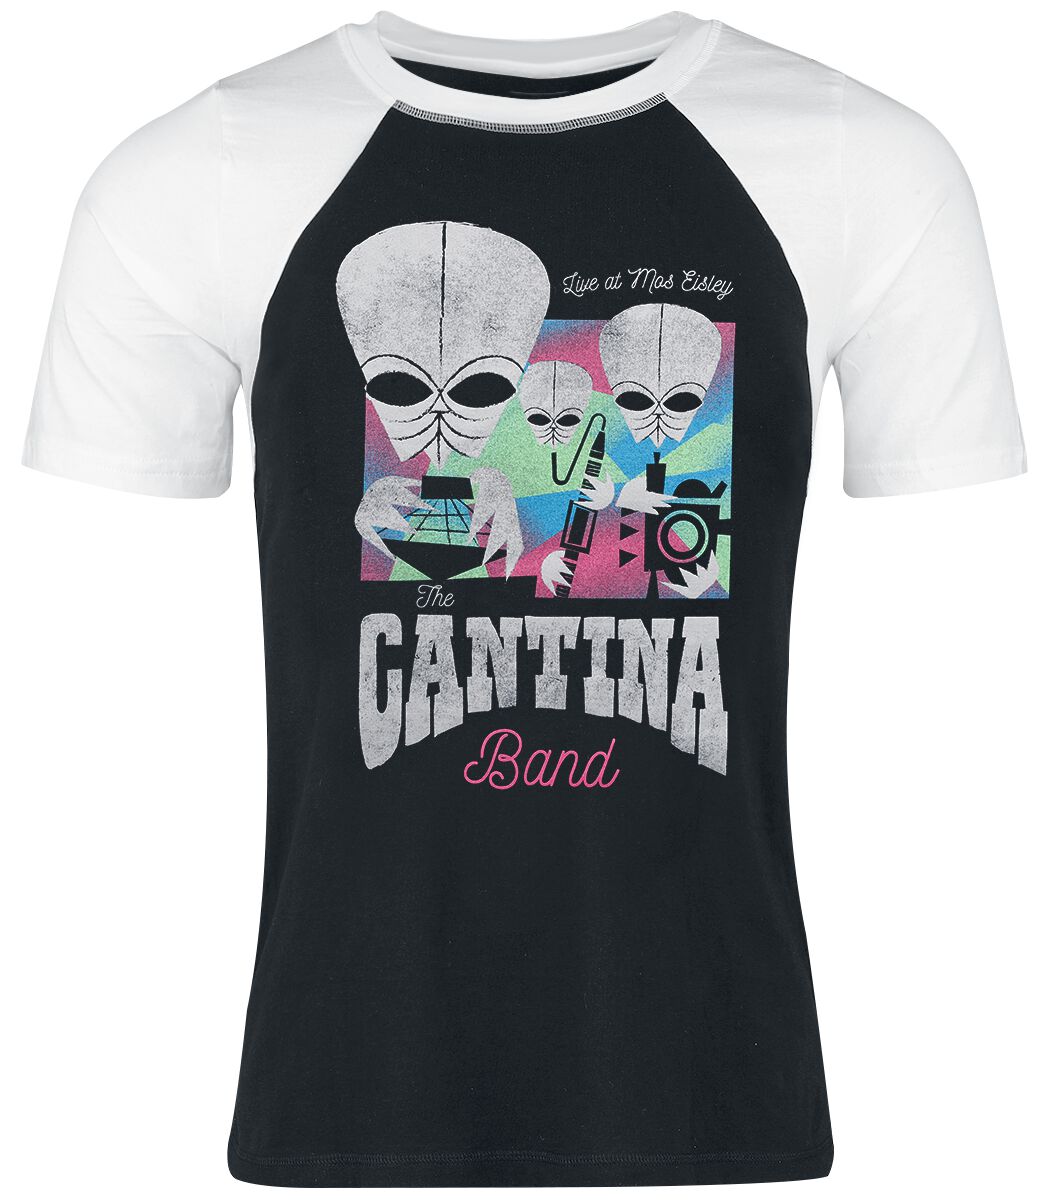 T-Shirt Manches courtes de Star Wars - Cantina Band - S à XXL - pour Femme - noir